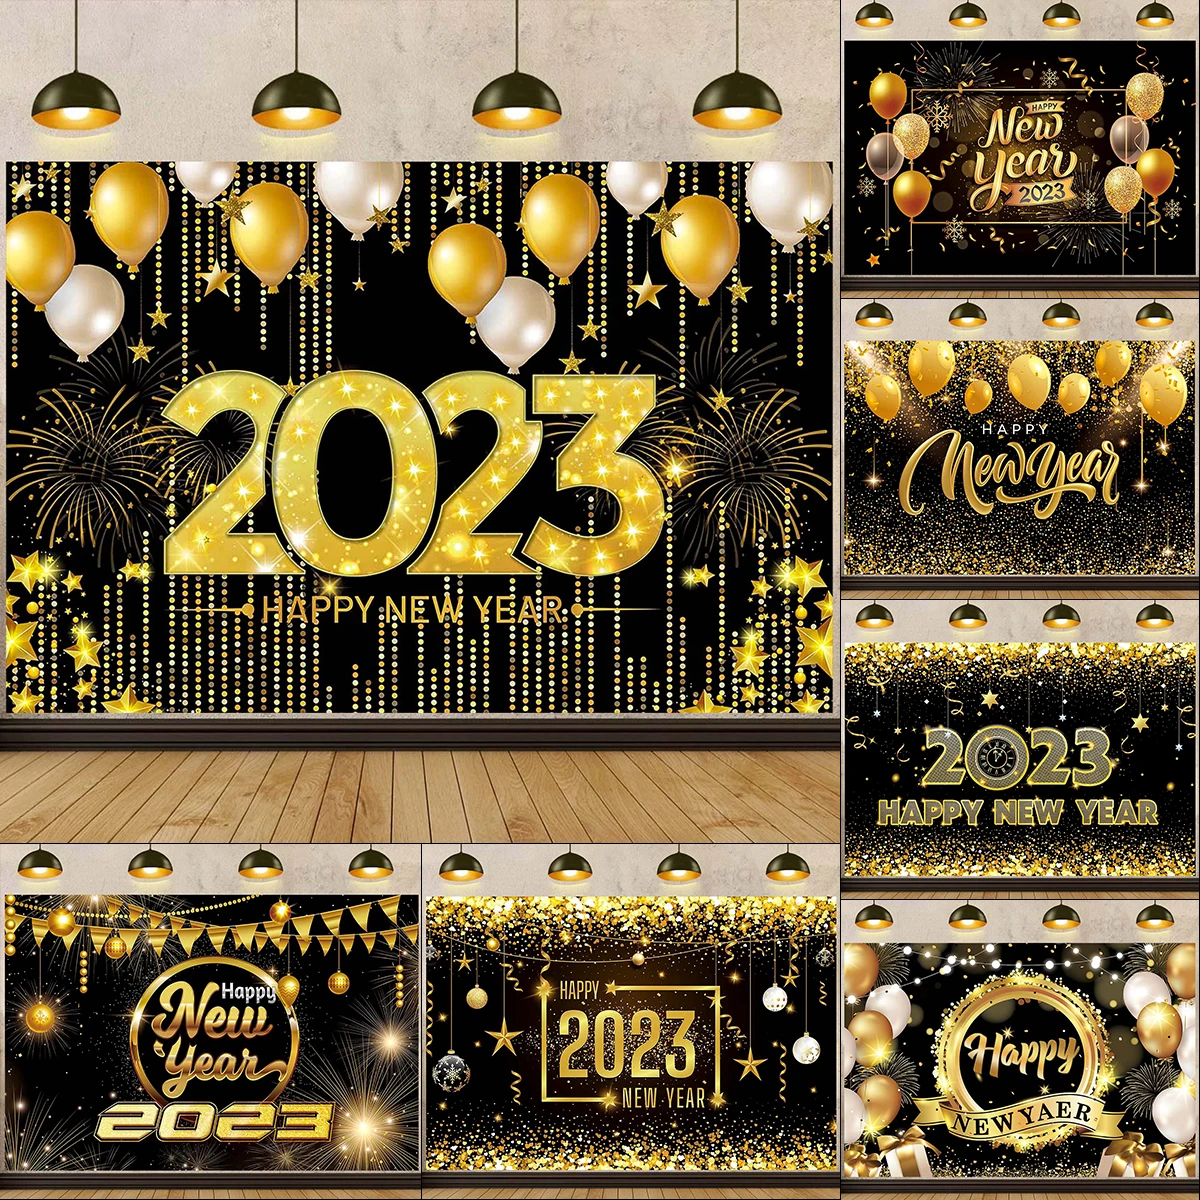 Feliz ano novo 2023 pano de fundo banner glitter clock fogos de artifício  decoração de festa natal ornamento presente navidad noel natal ano novo| |  - AliExpress